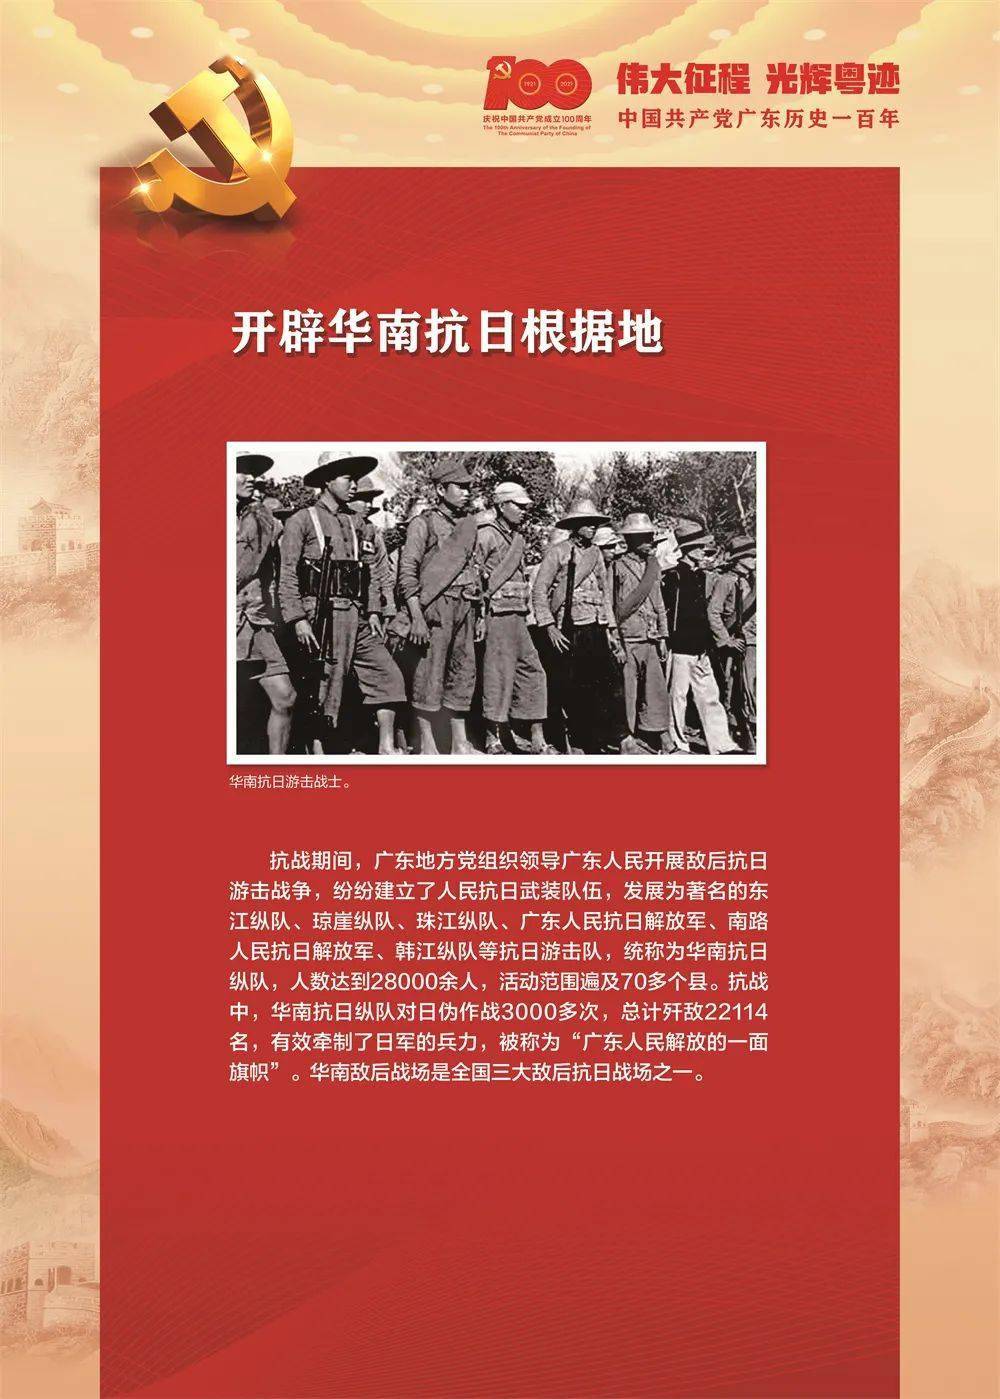 【伟大征程 光辉粤迹】中国共产党广东历史一百年(30)